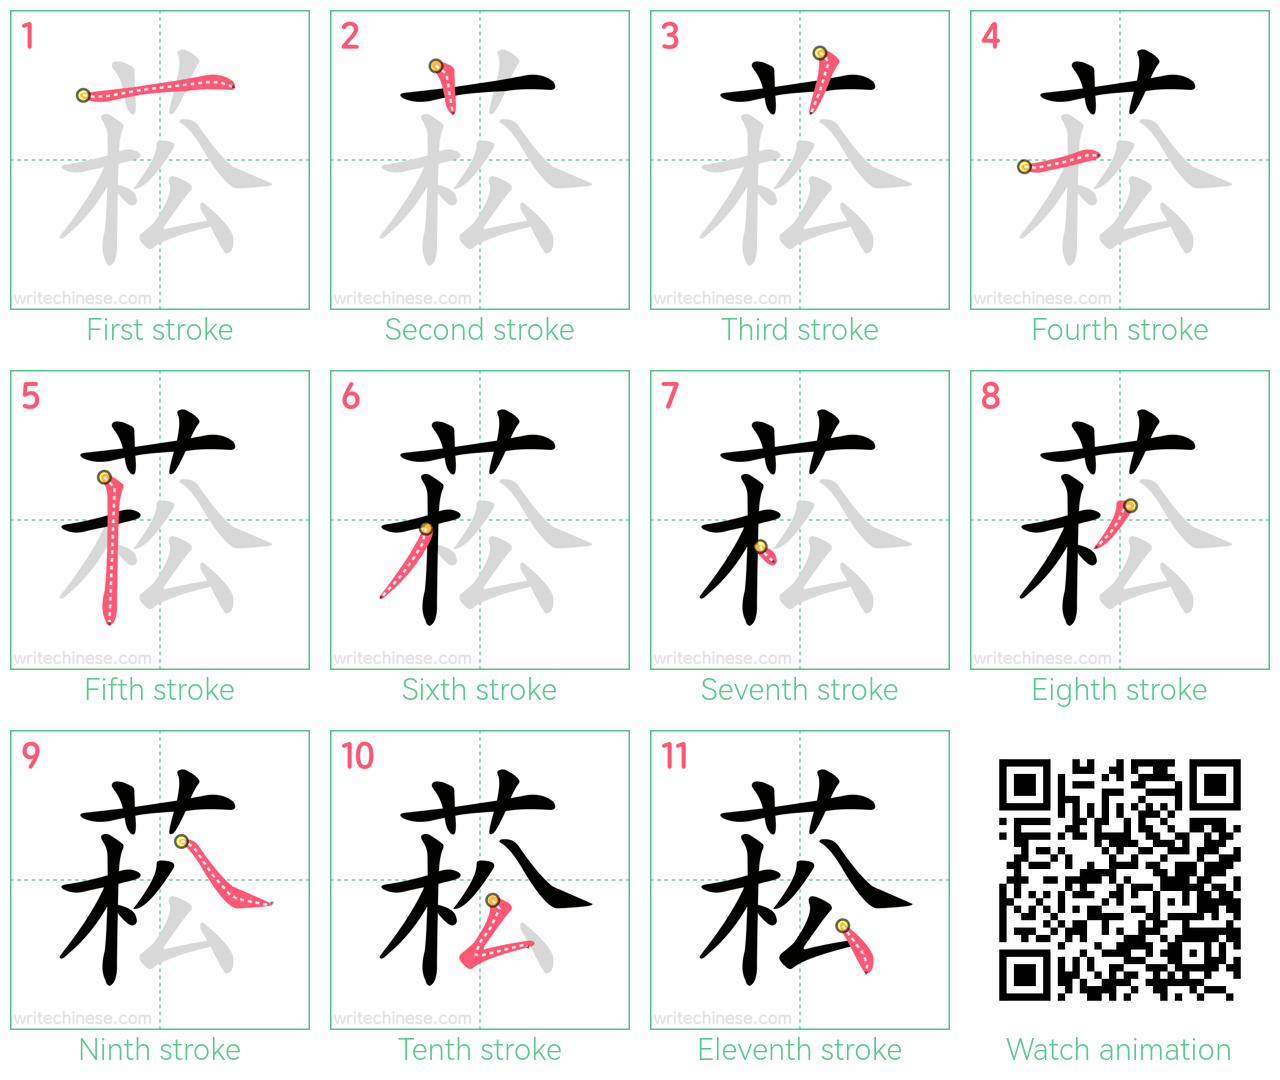 菘 step-by-step stroke order diagrams